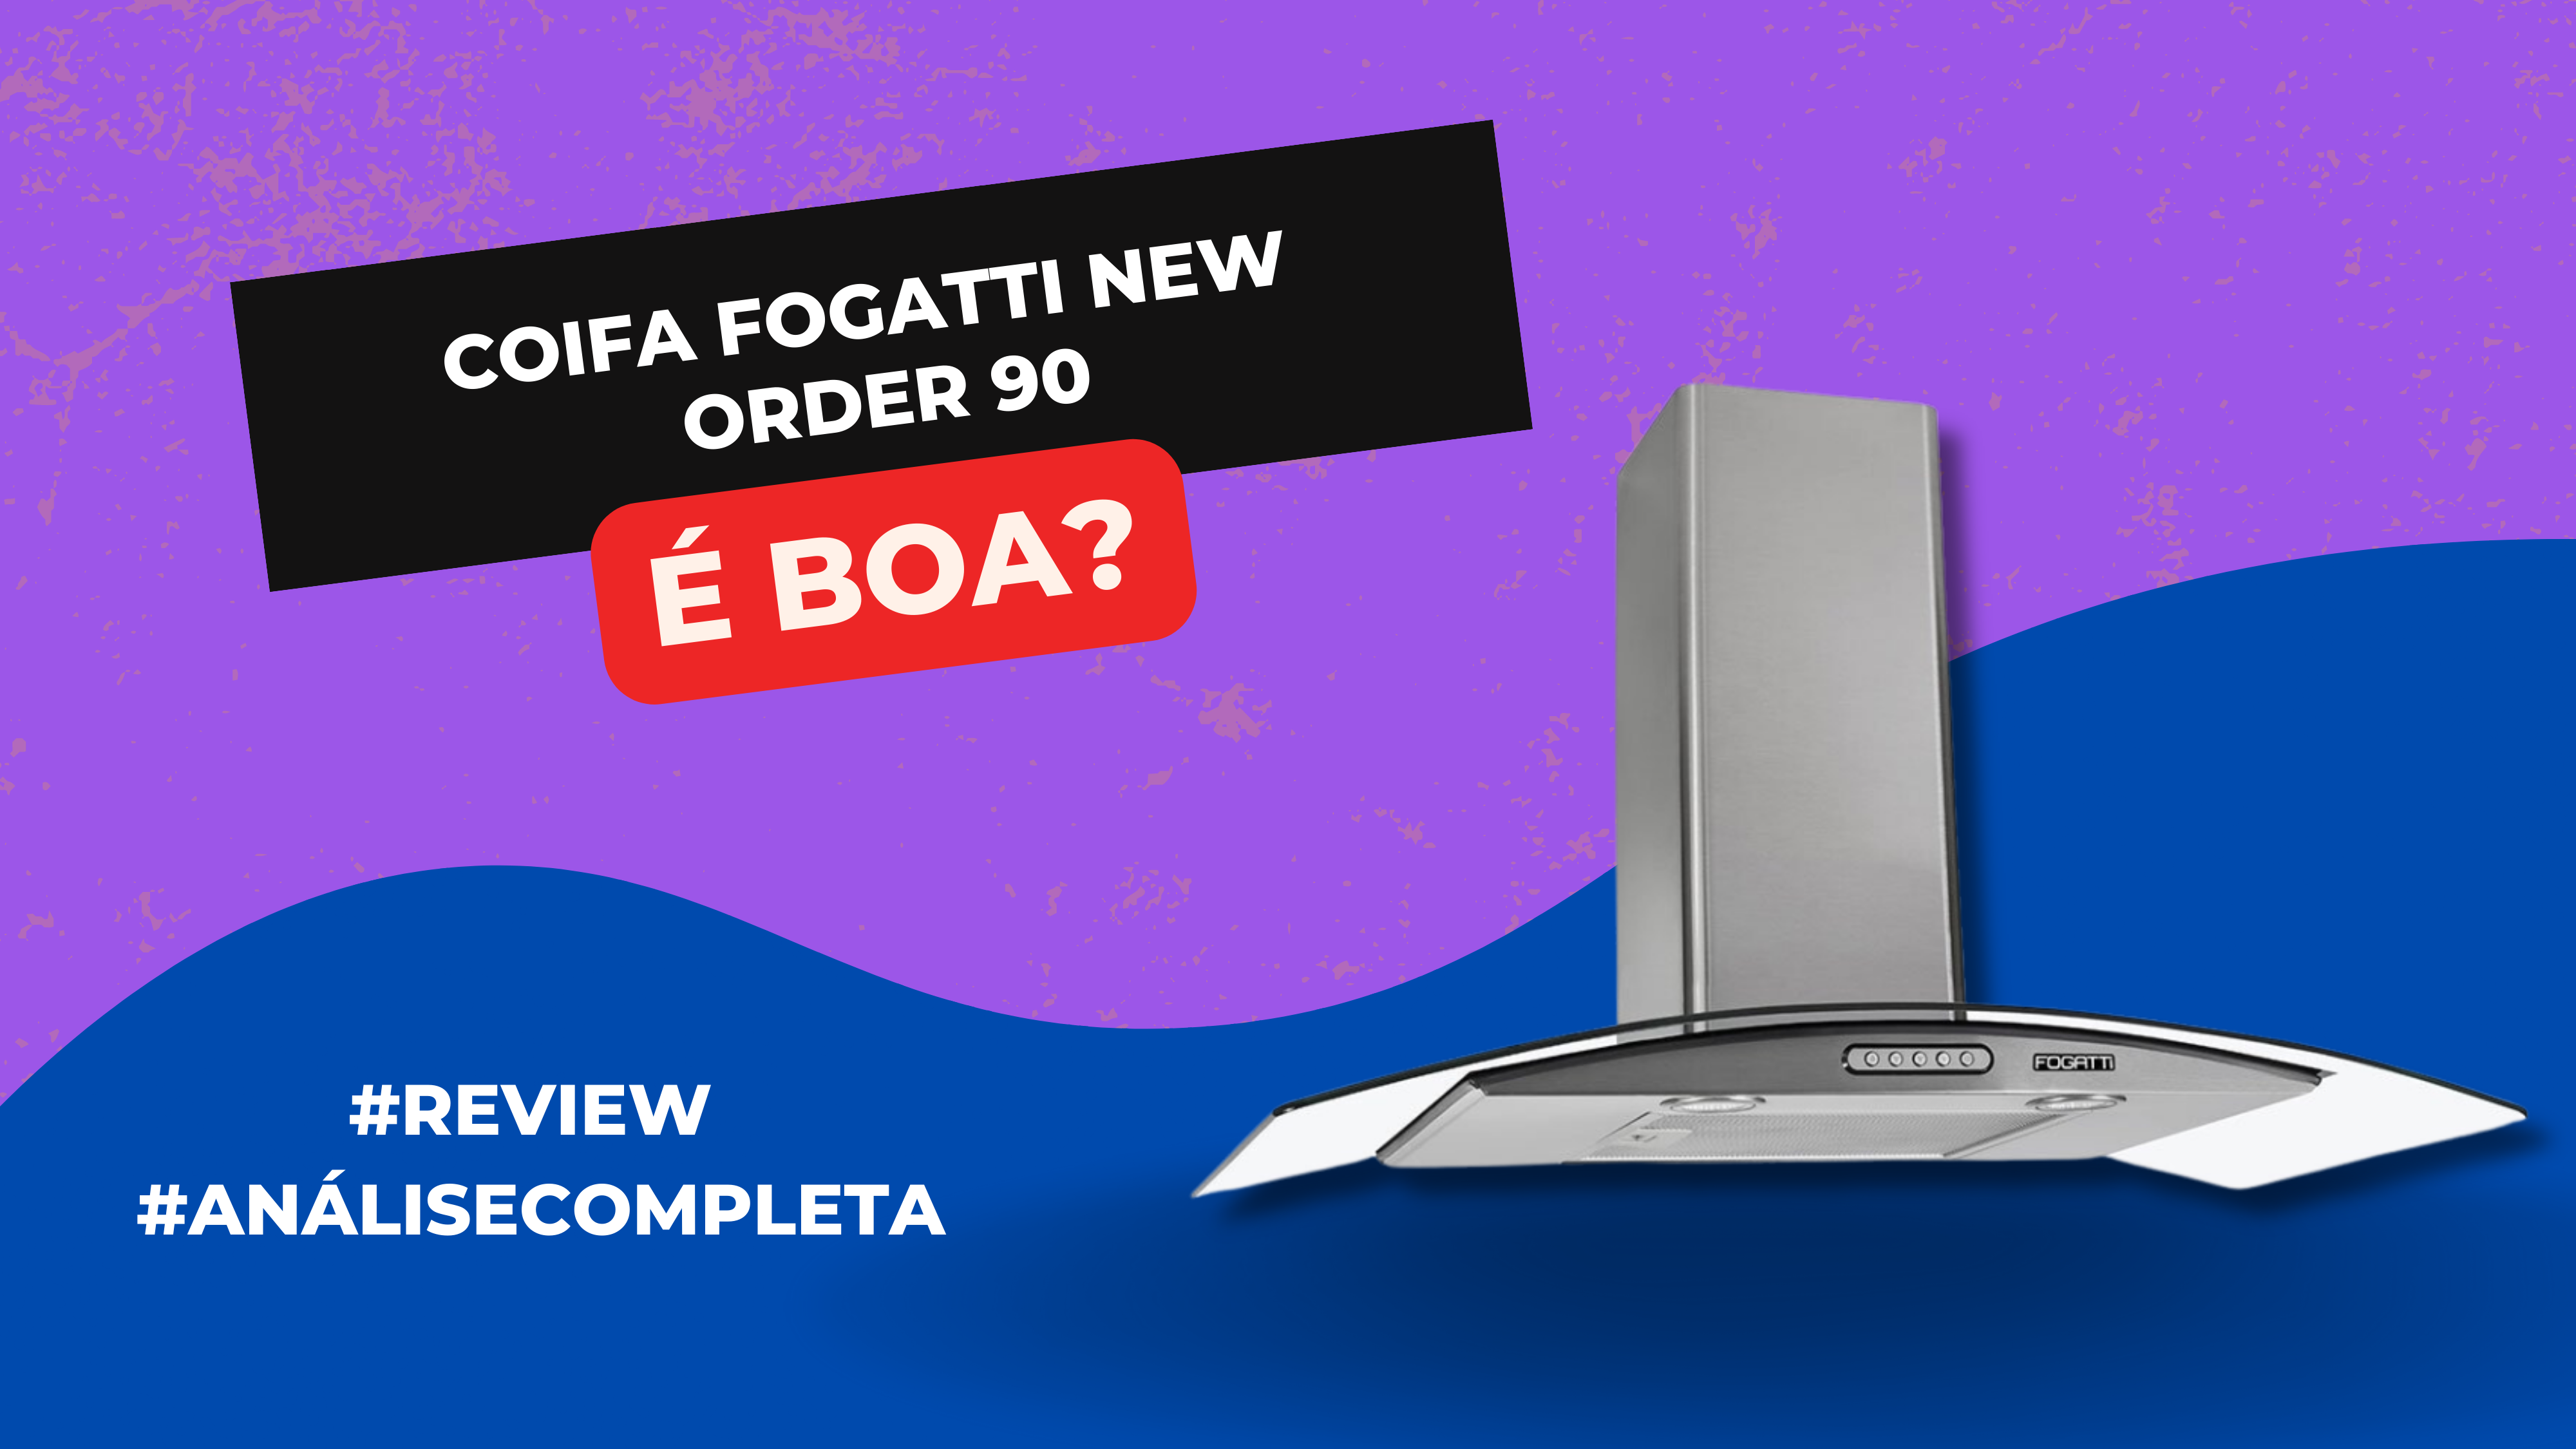 Coifa Fogatti New Order 90